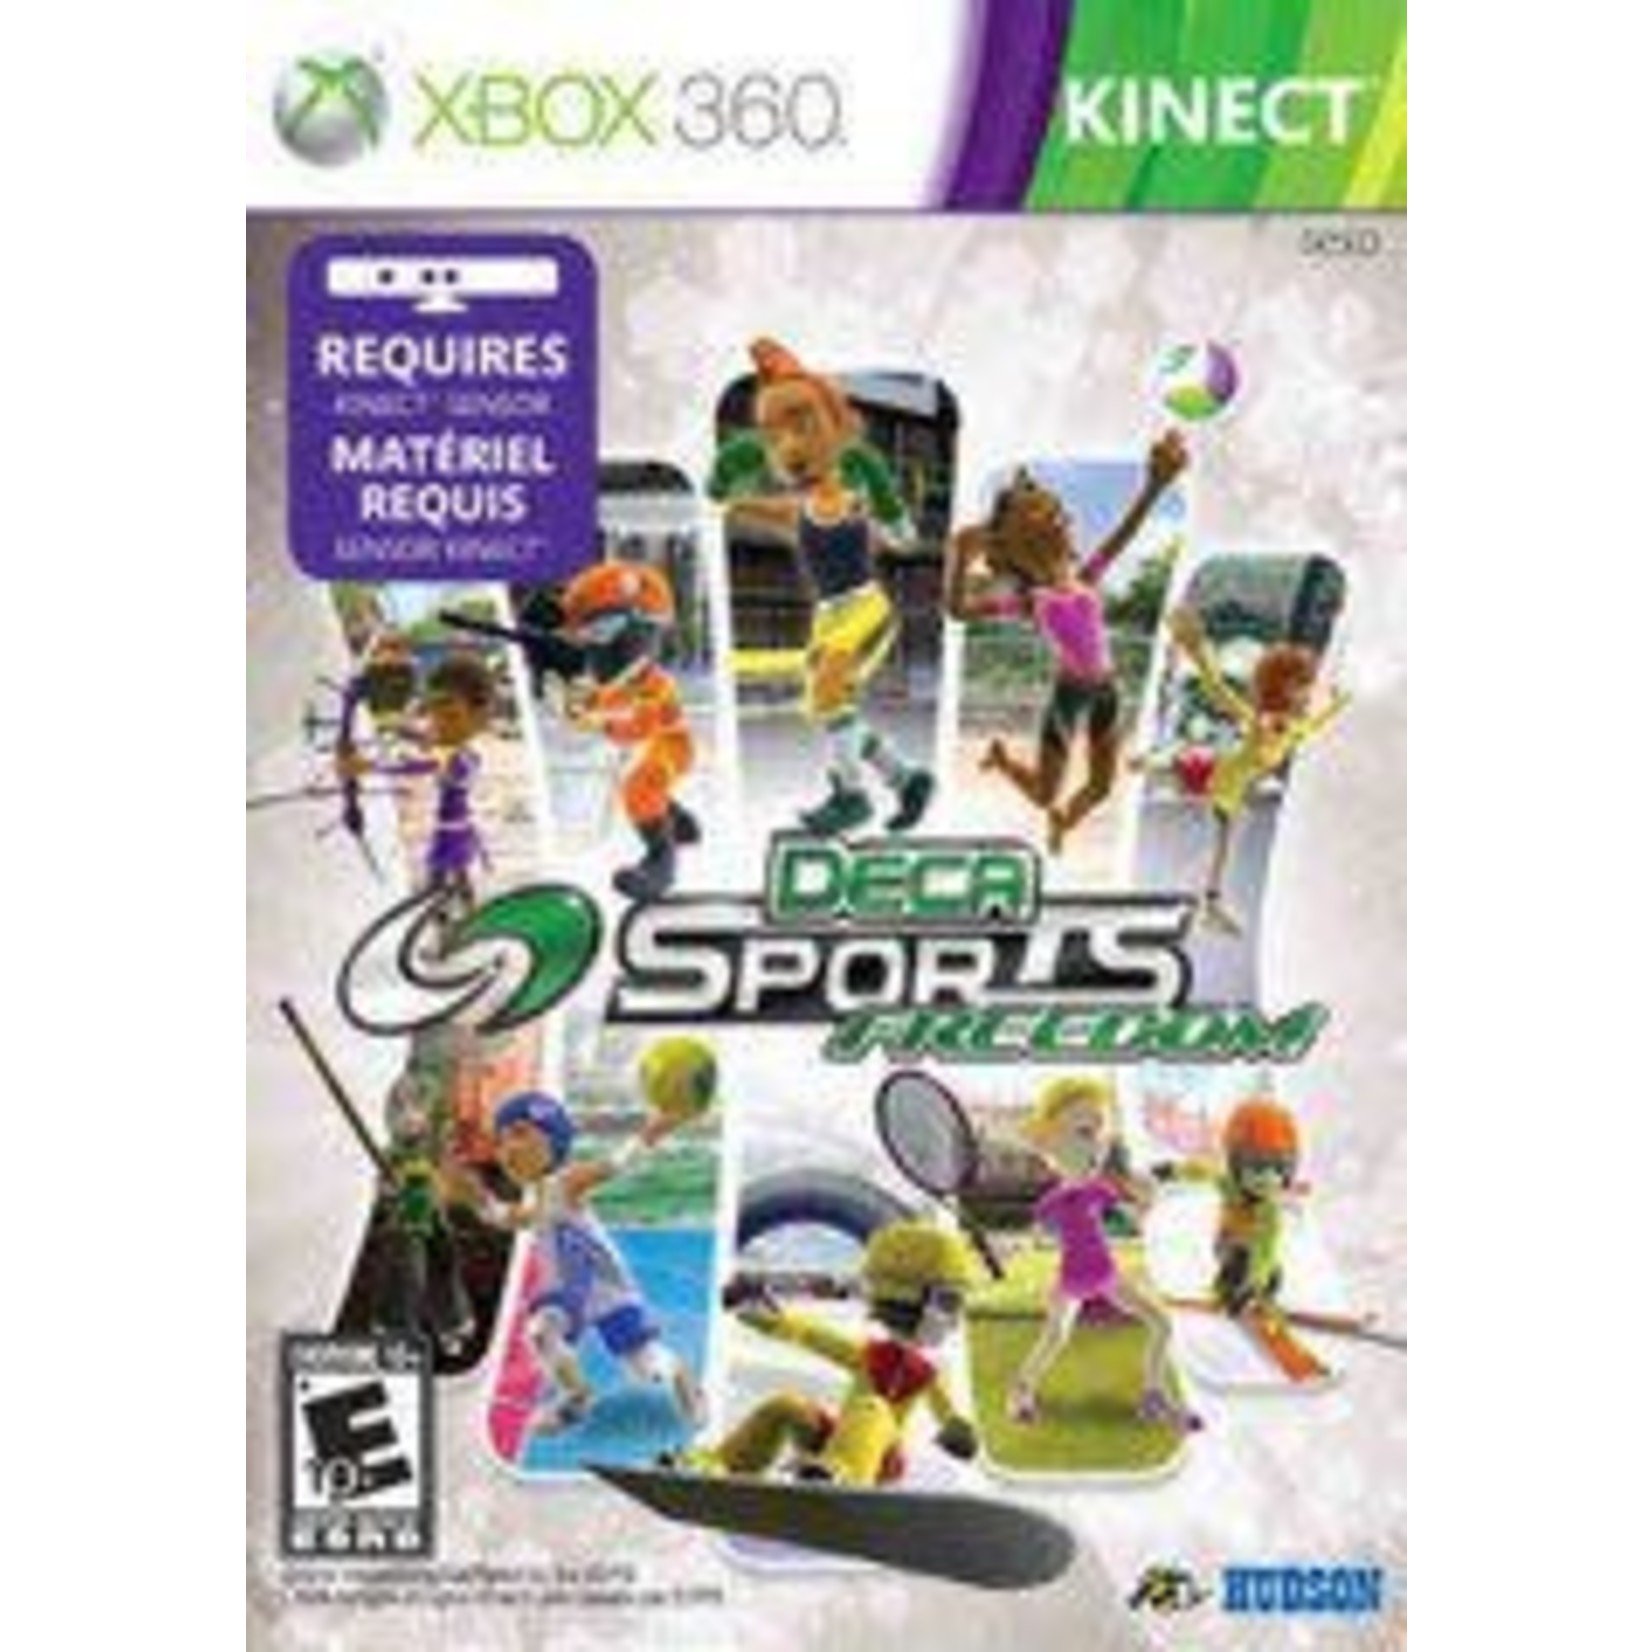 Xbox Deca Sports Freedom [Xbox 360]